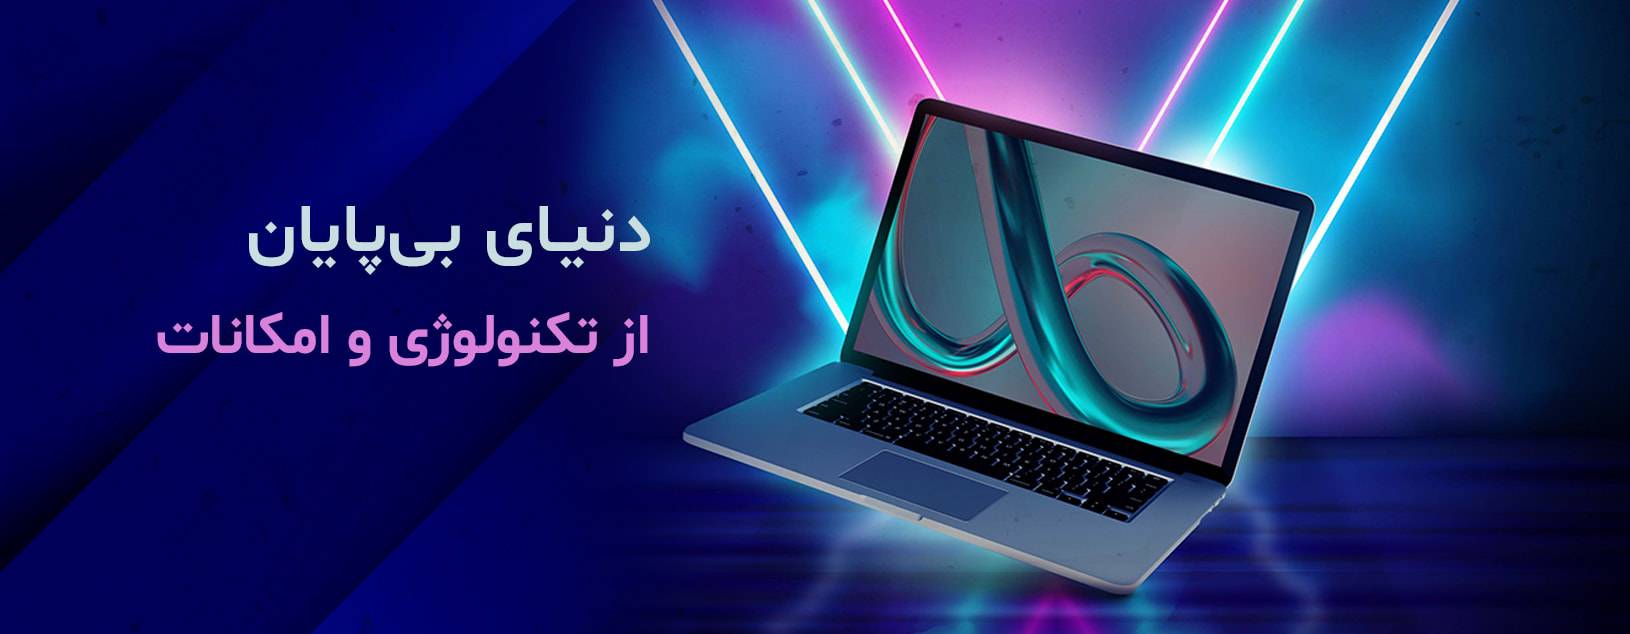 https://www.rishehdar.com/category/laptops-category